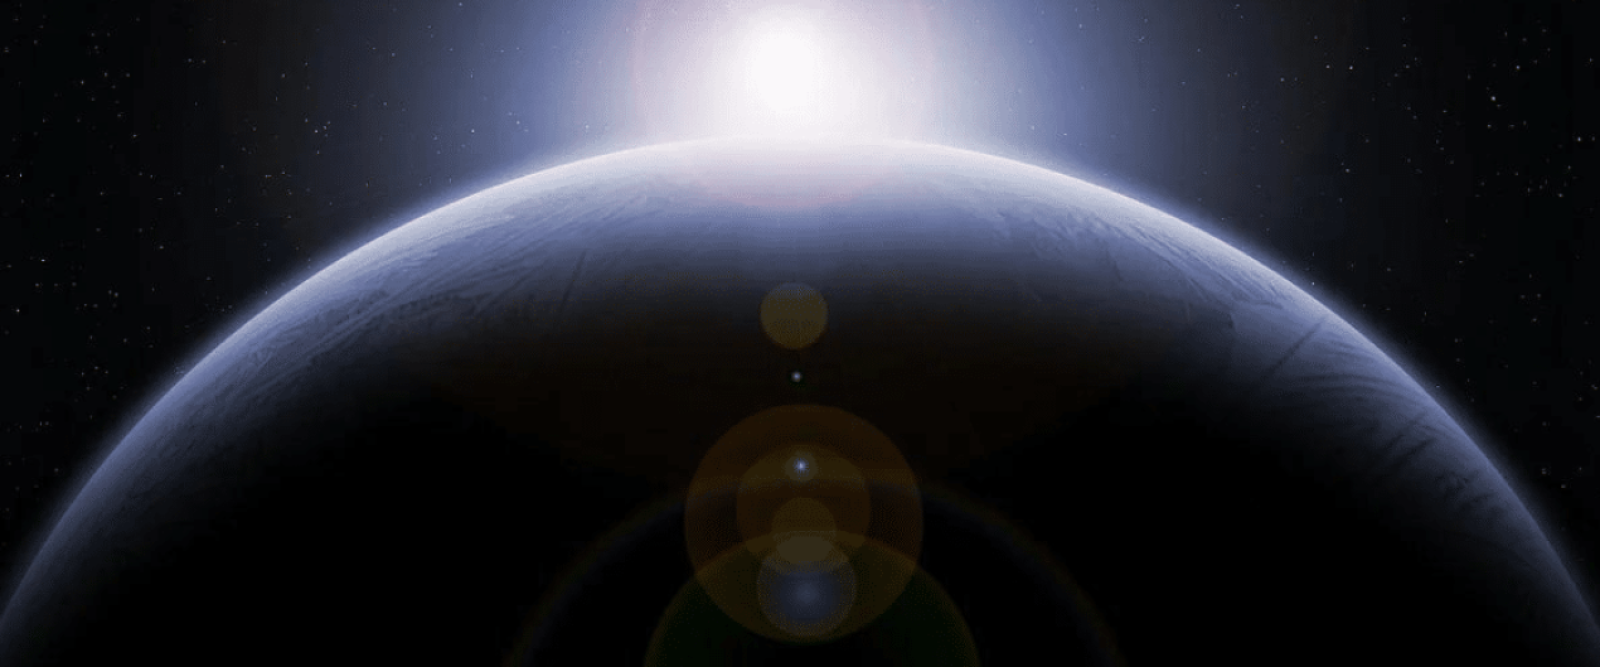 Astrofísica asegura que el descubrimiento de vida extraterrestre sería inminente